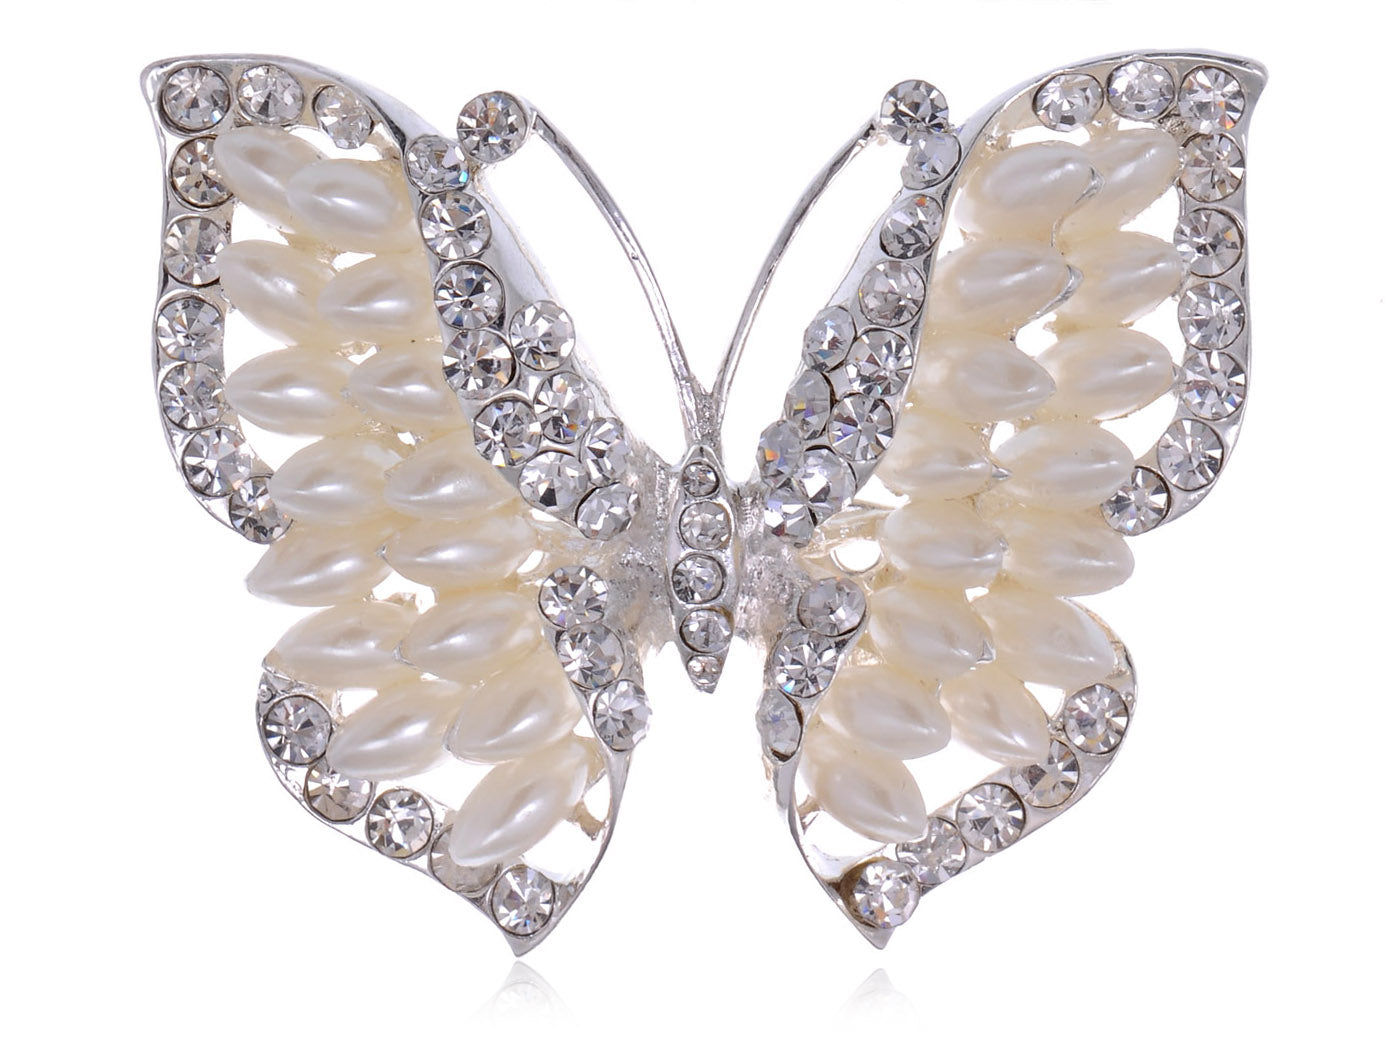 Opal Like Ss Majestic Butterfly Statement Pin Brooch